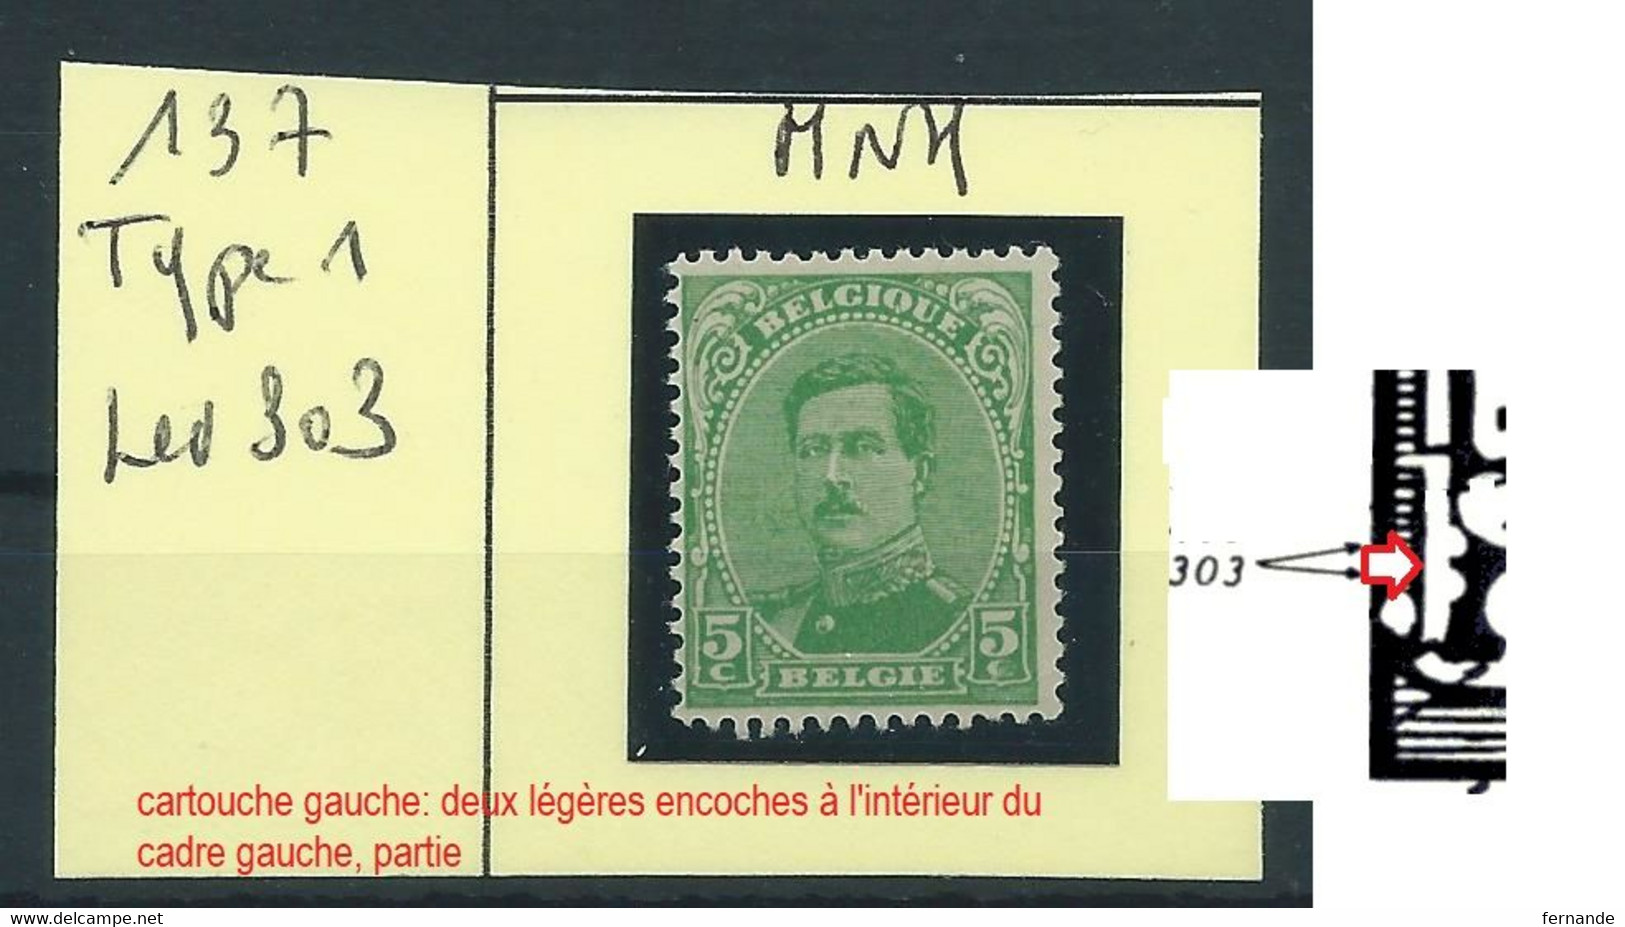 137 Neuf Sans Charnière (MNH) Avec Variété Leveque 303 - Unclassified